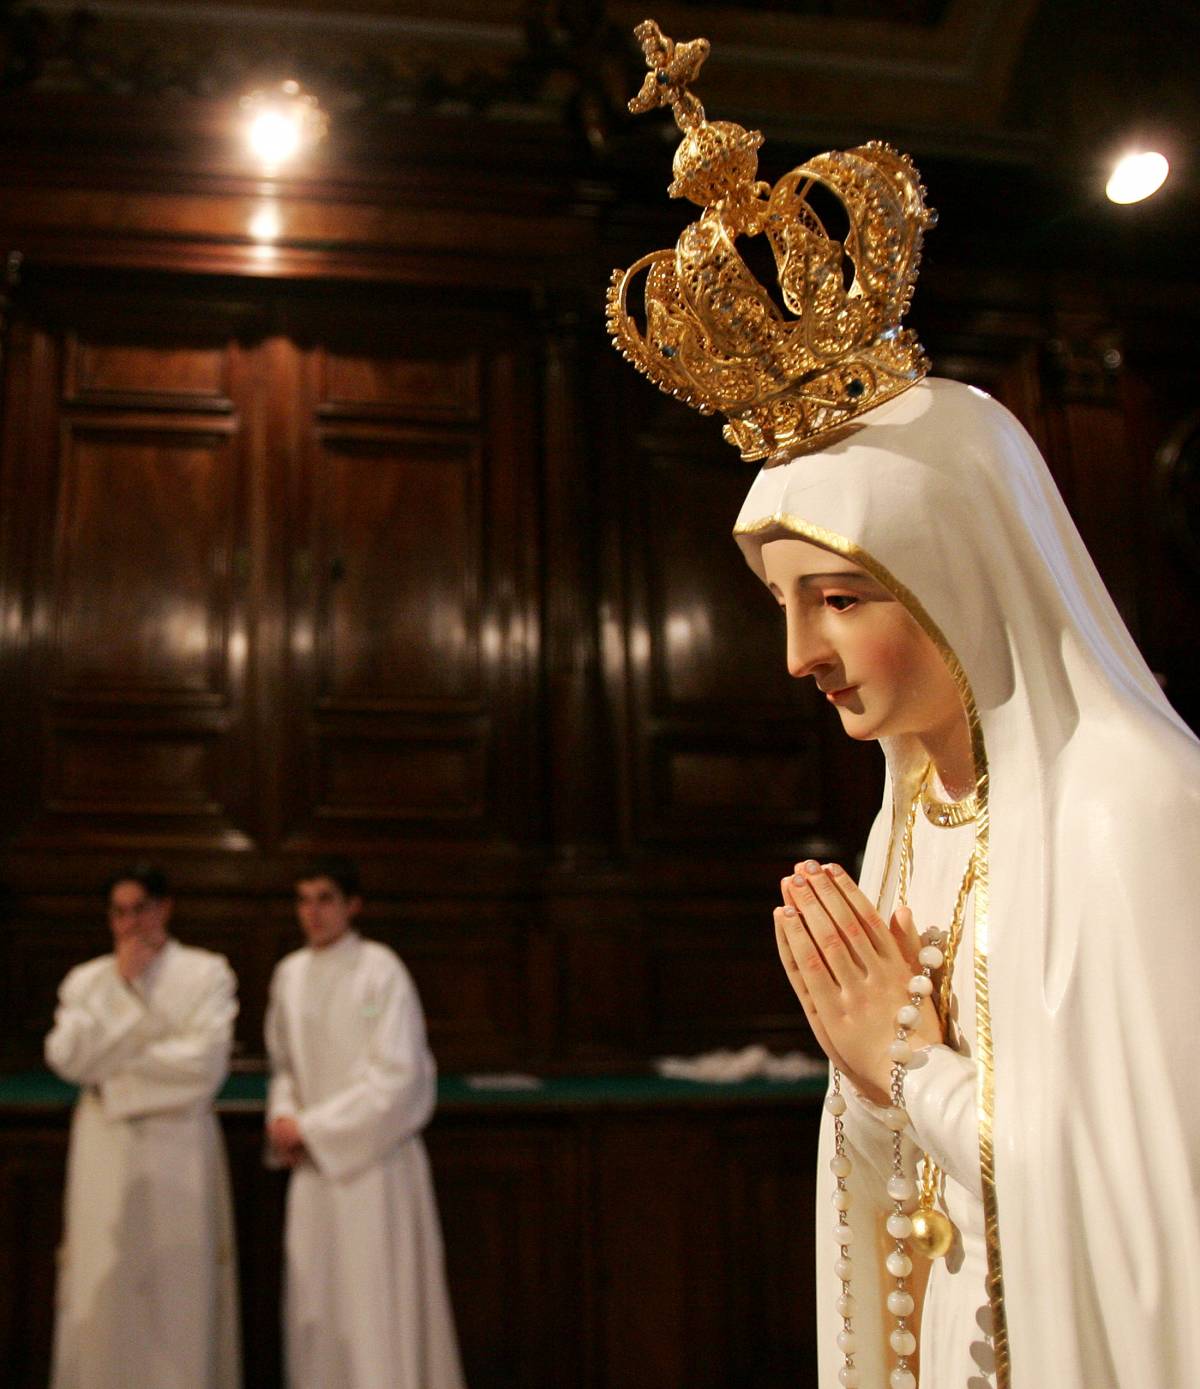 La verità sul terzo segreto di Fatima: la (vera) profezia della Madonna